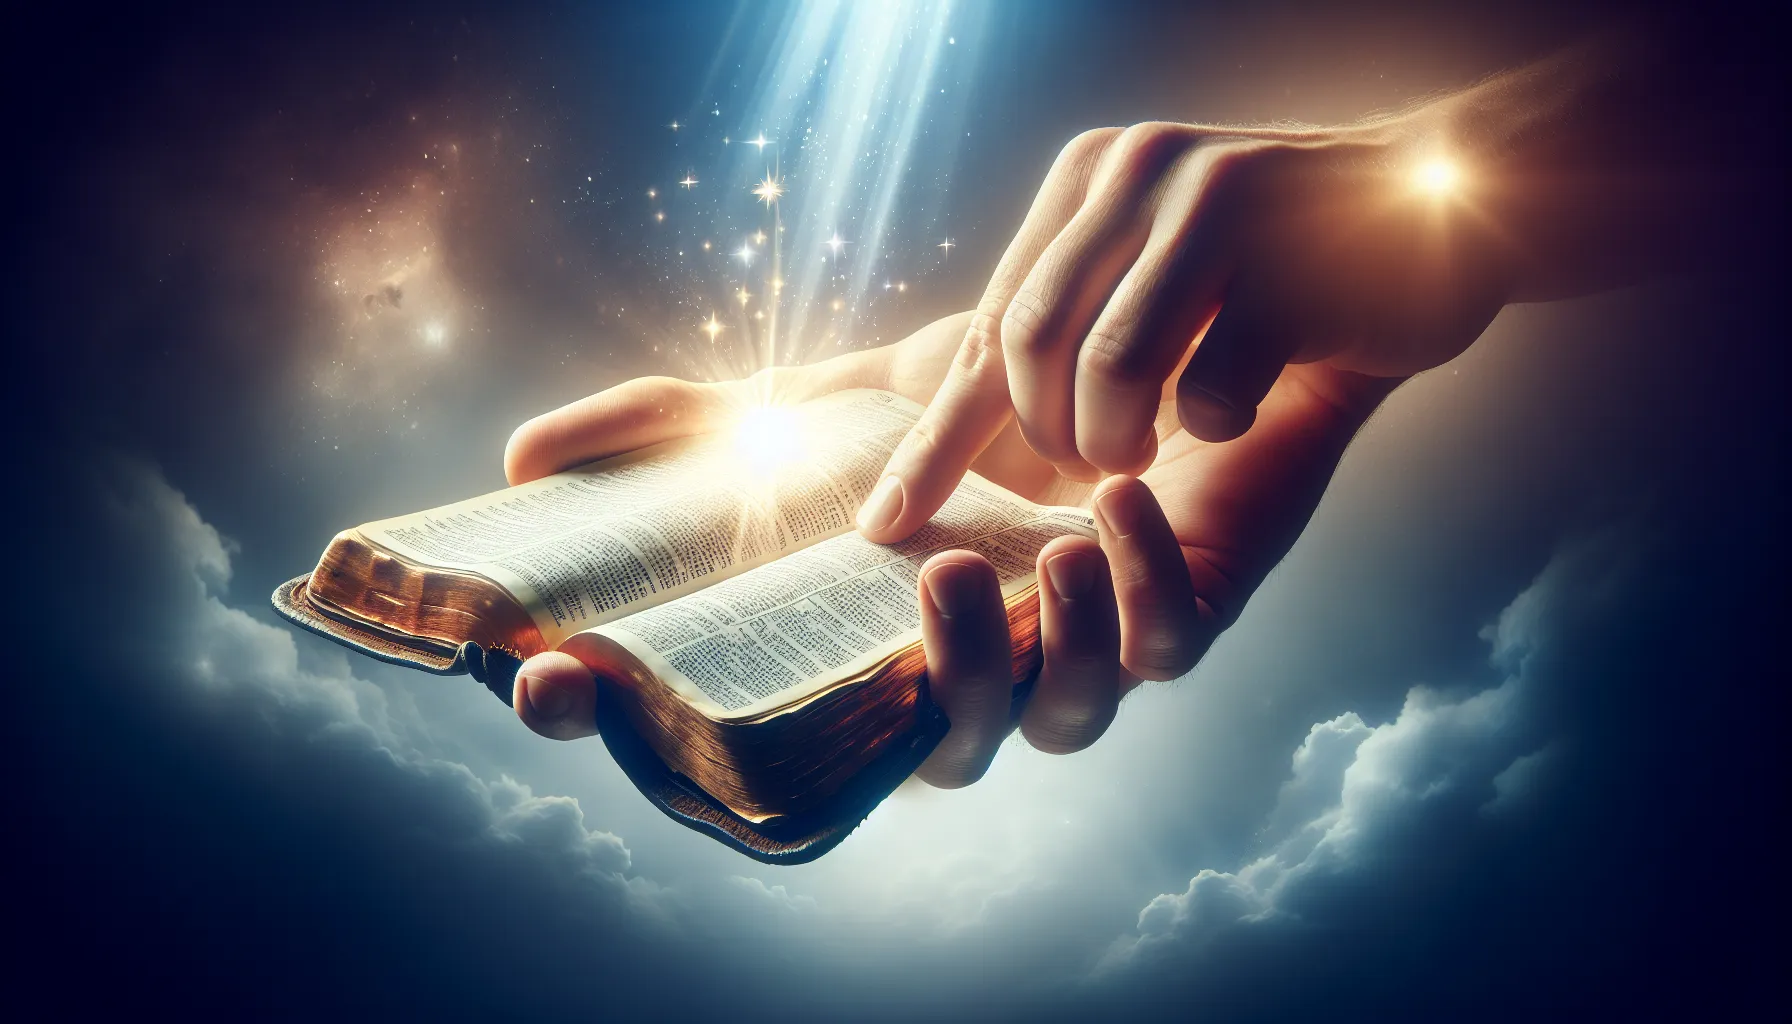 Imagen: Representación de una mano sosteniendo una Biblia abierta con una luz divina brillando sobre sus páginas, simbolizando la inspiración divina en el texto sagrado.